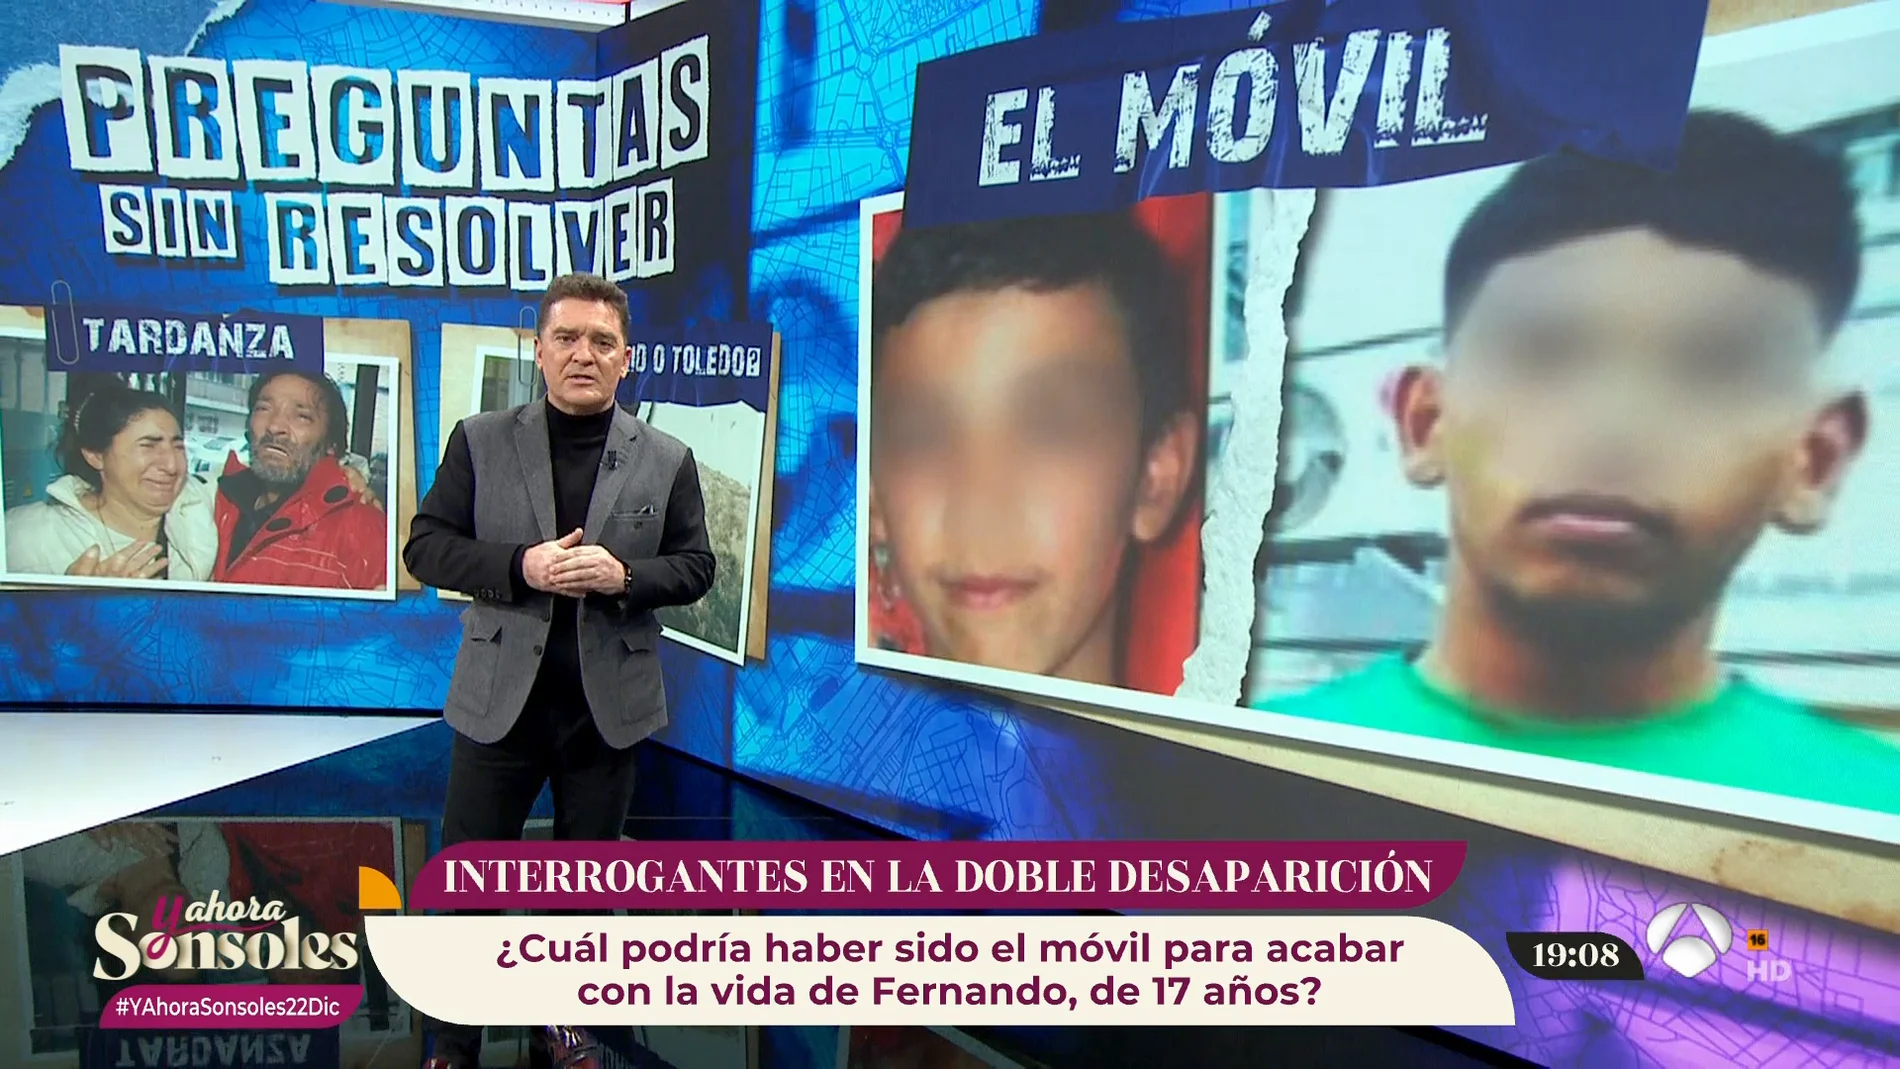 Carlos Quílez resuelve las principales incógnitas del caso de los menores desaparecidos en Carabanchel